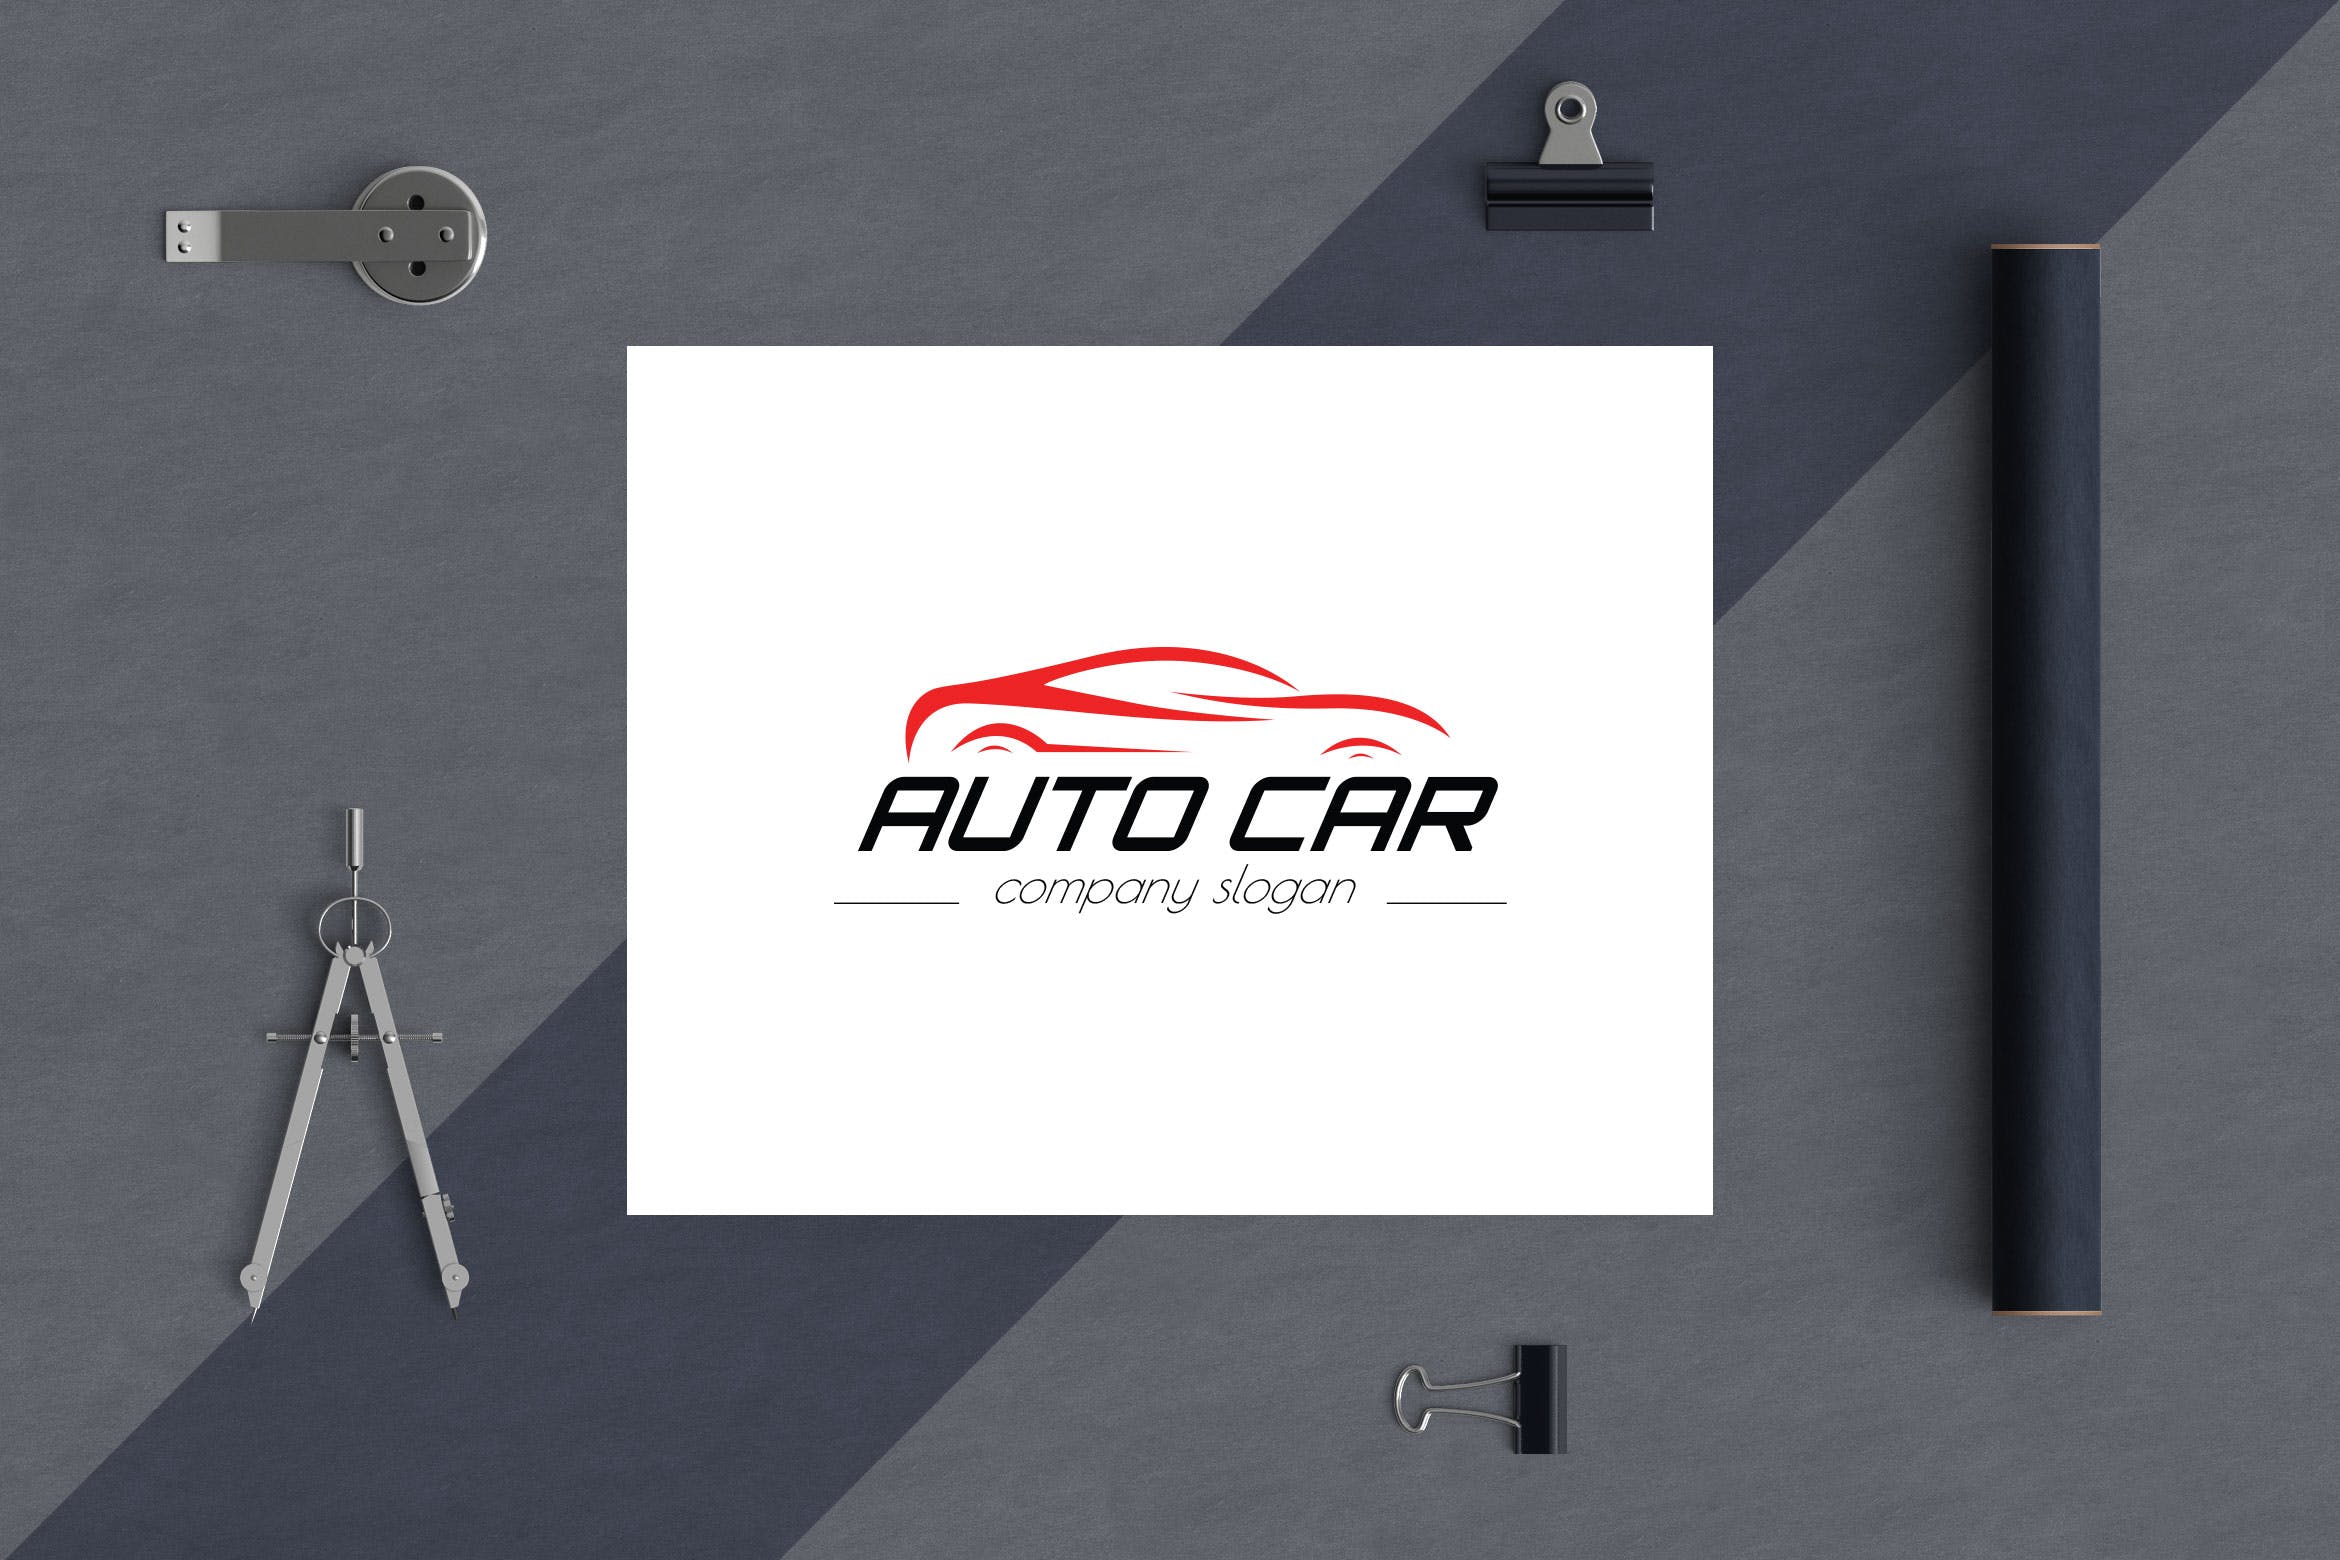 汽车相关企业品牌Logo设计蚂蚁素材精选模板 Auto Car Business Logo Template插图